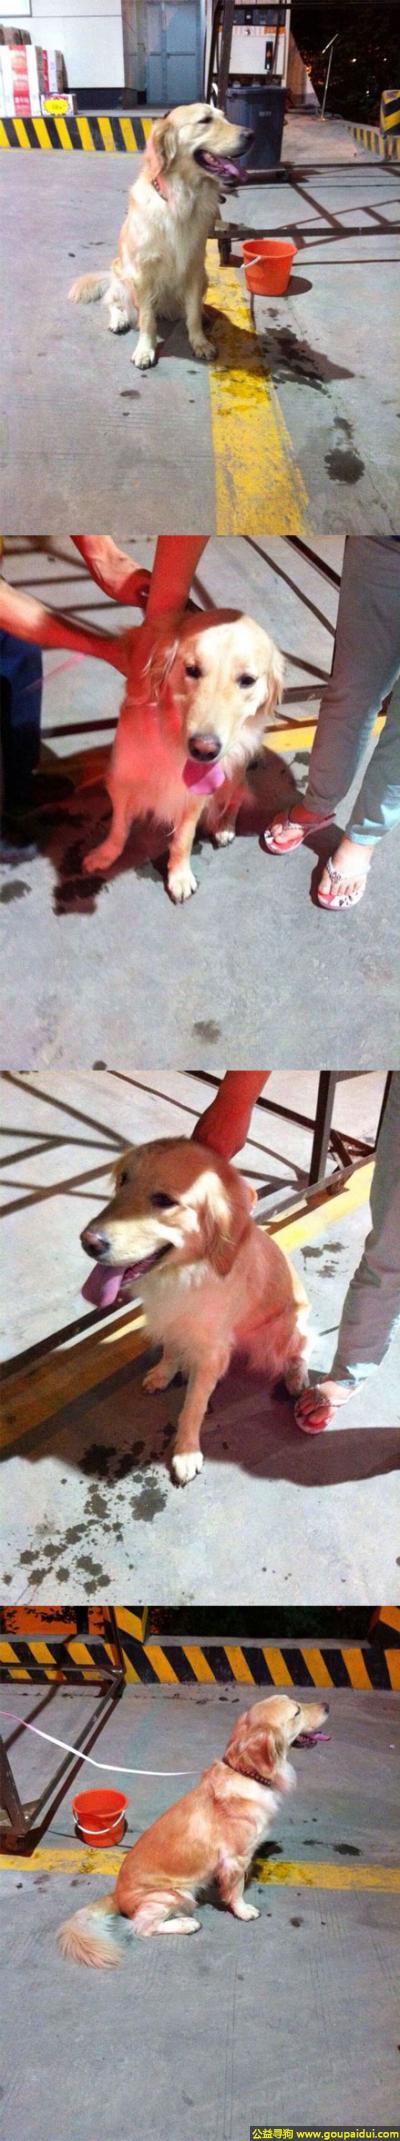 西安寻狗网，西省西安市绕城高速中石油加油站捡到有一只走失的金毛小姐，它是一只非常可爱的宠物狗狗，希望它早日回家，不要变成流浪狗。